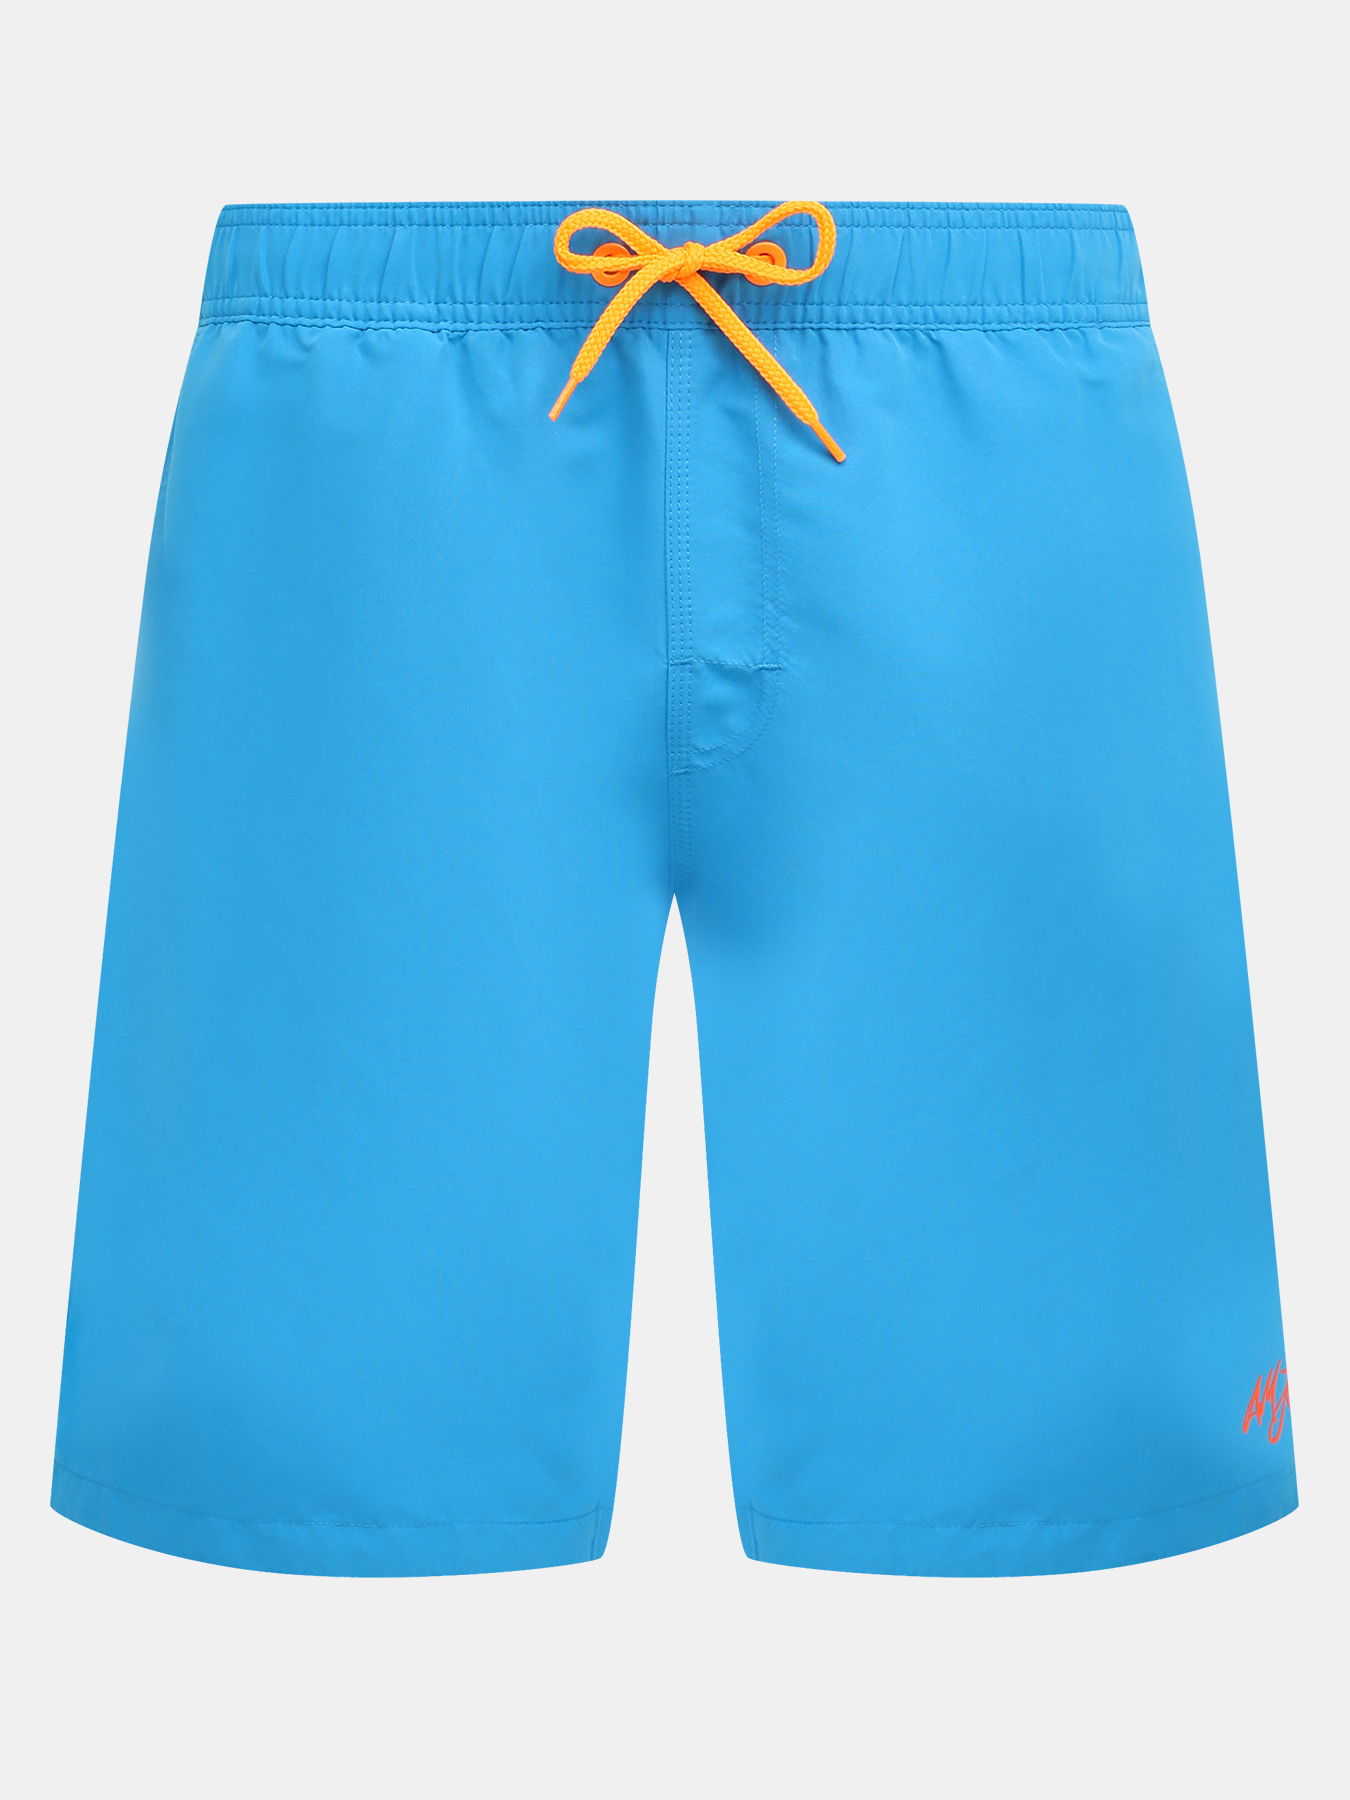 Шорты плавательные Alessandro Manzoni Jeans 376495-030, цвет голубой, размер 58 - фото 1